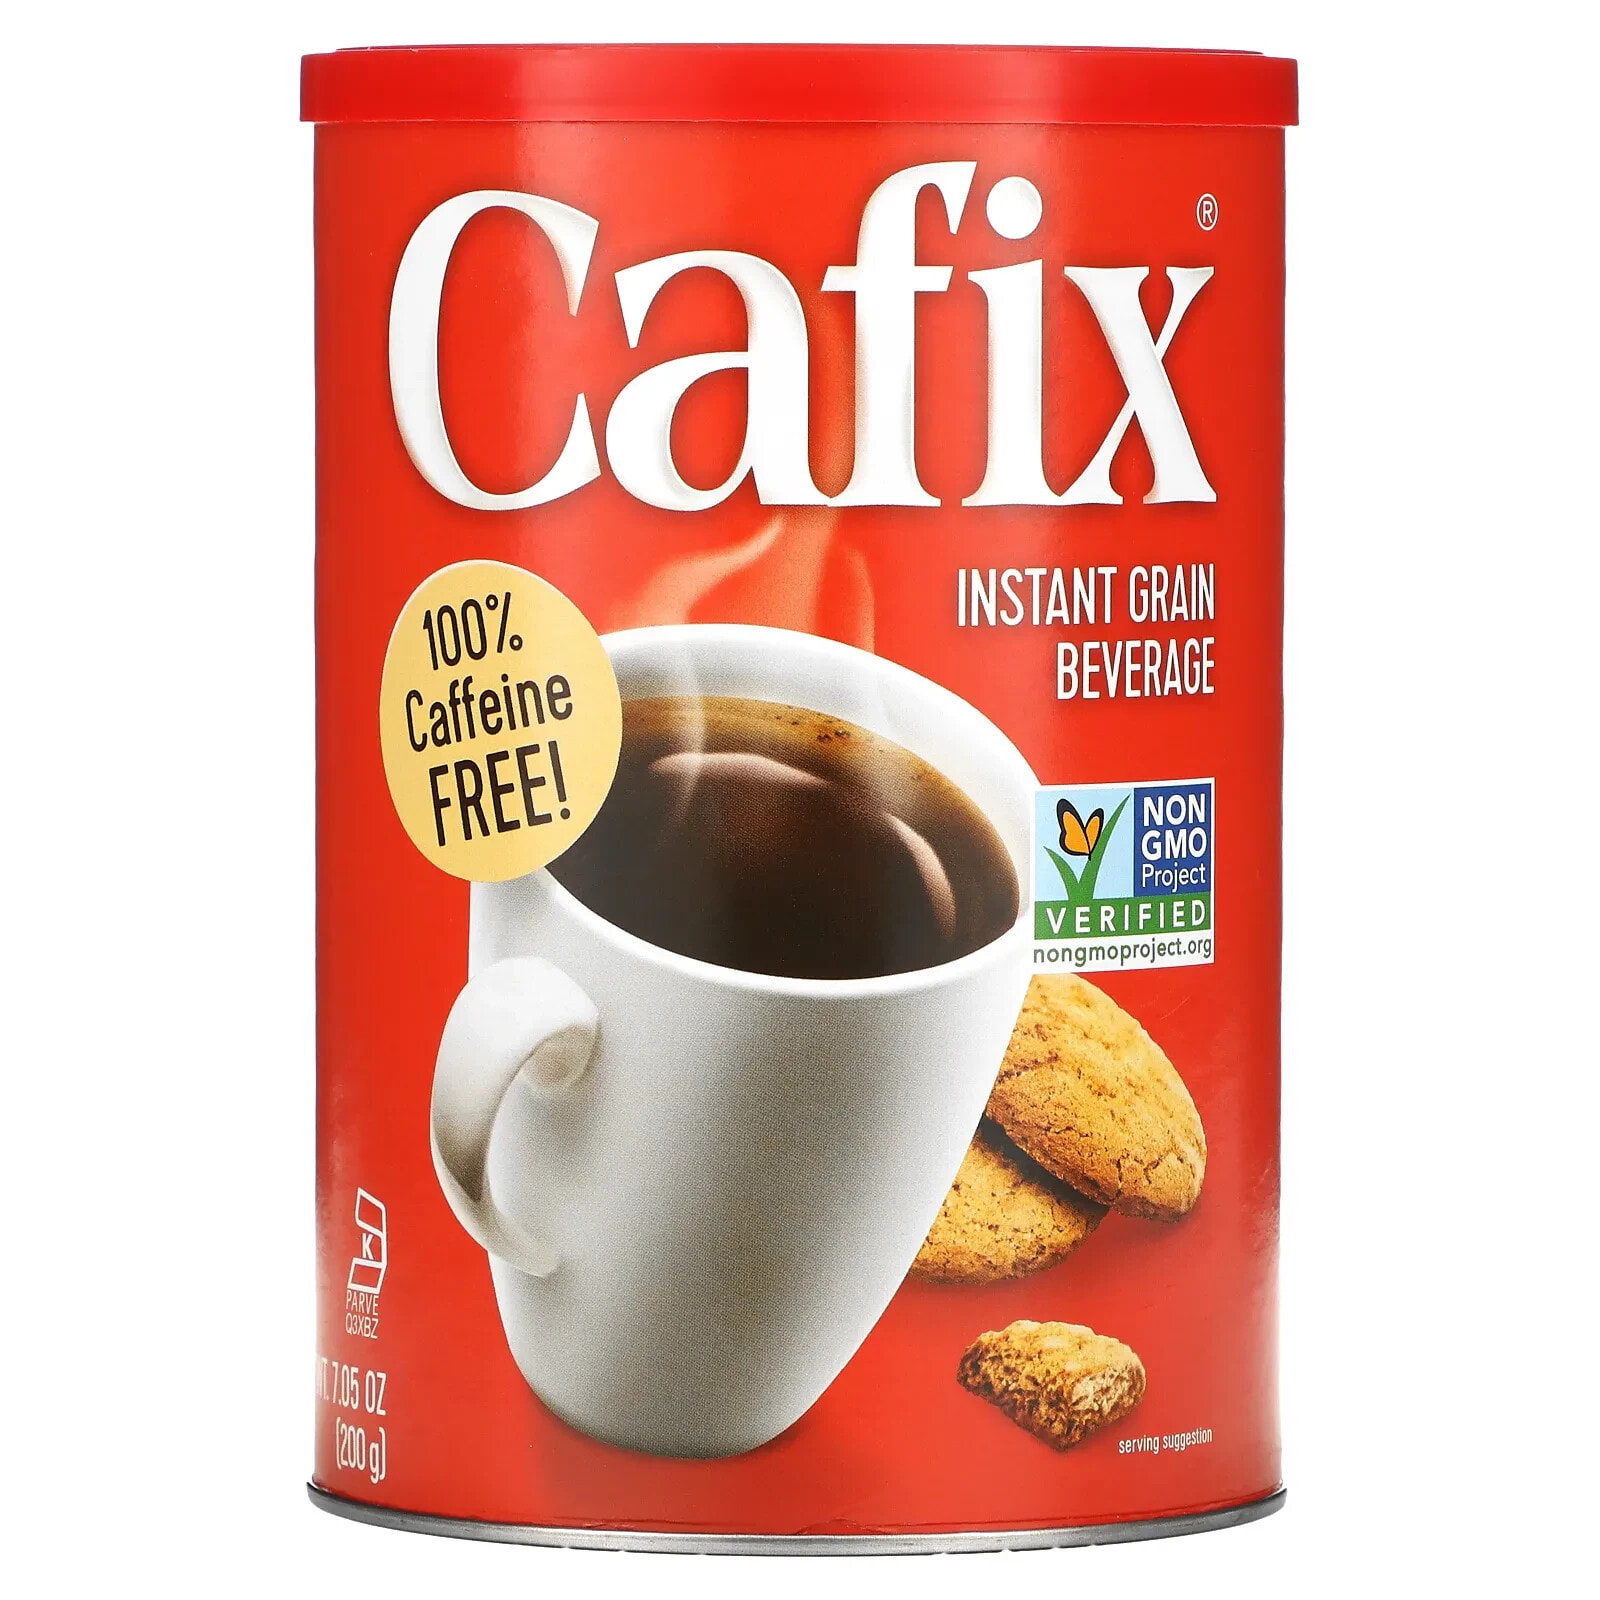 Кофеин 7. Напитки без кофеина. Напиток от Cafix. Cafix купить. Cafix, быстрорастворимый зерновой напиток без кофеина купить.